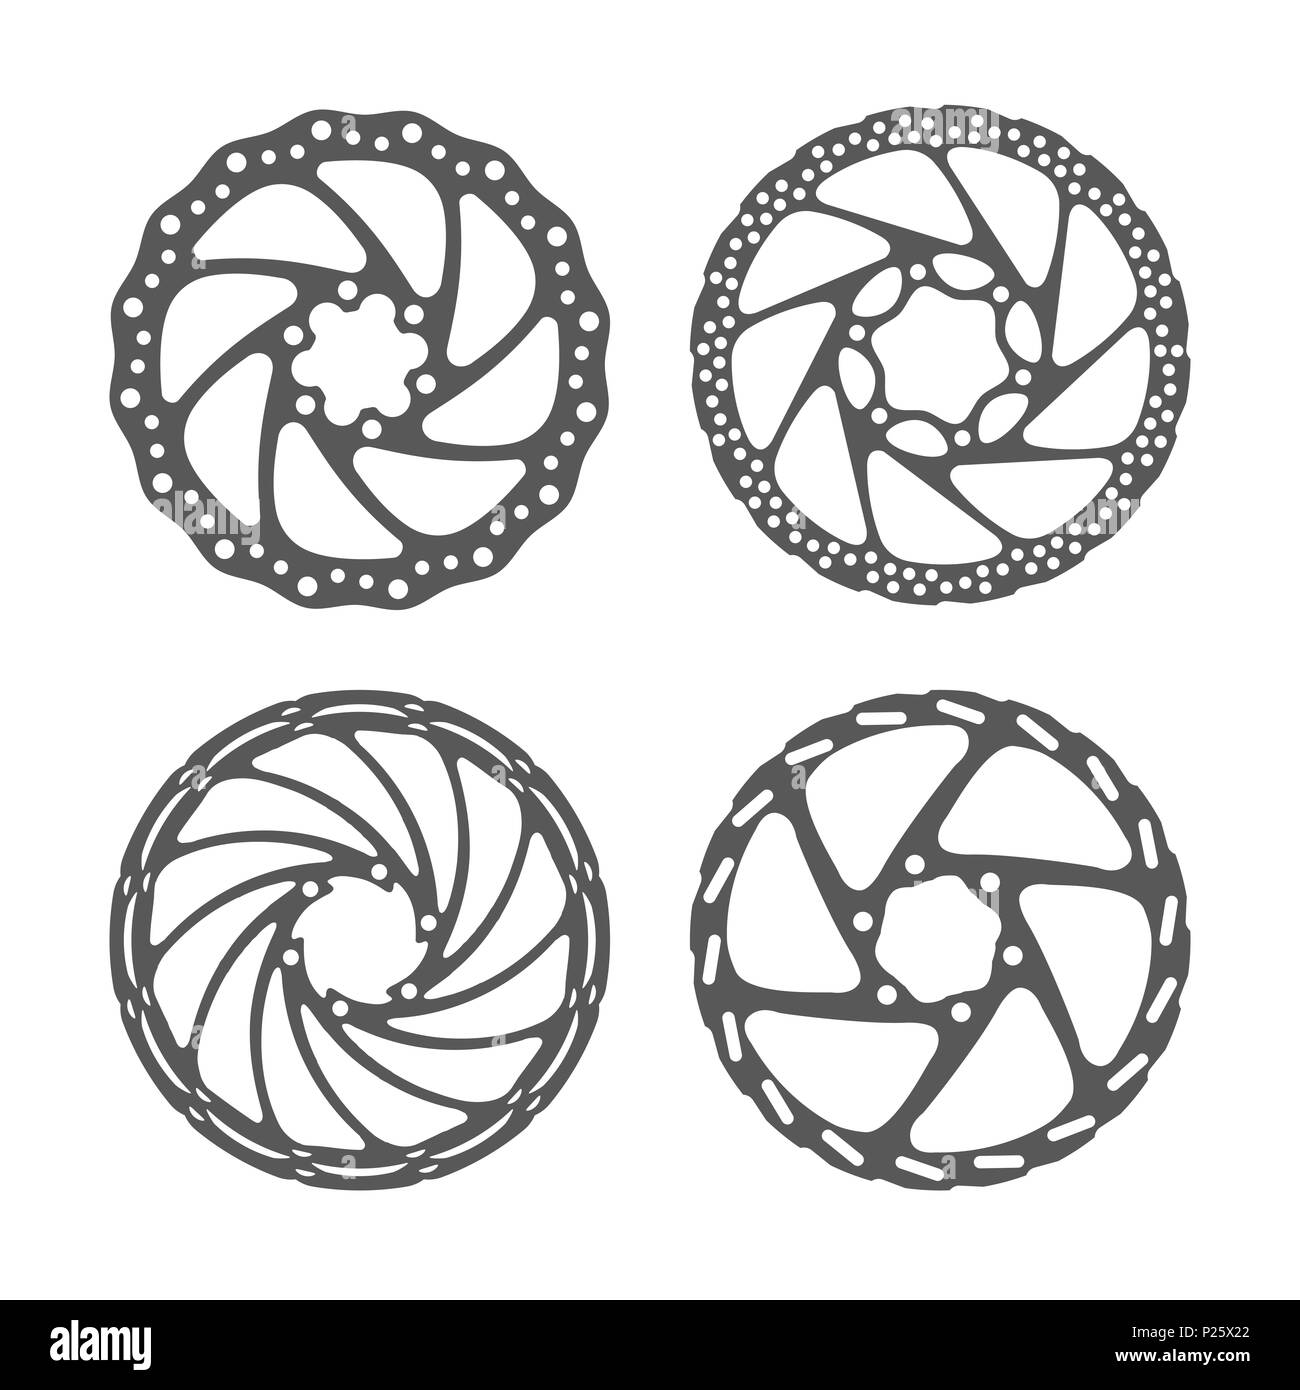 Location Ensemble de frein à disque. Rotors de frein à disque vtt de formes différentes. Illustration réaliste. Pièces détachées vélo série. Banque D'Images